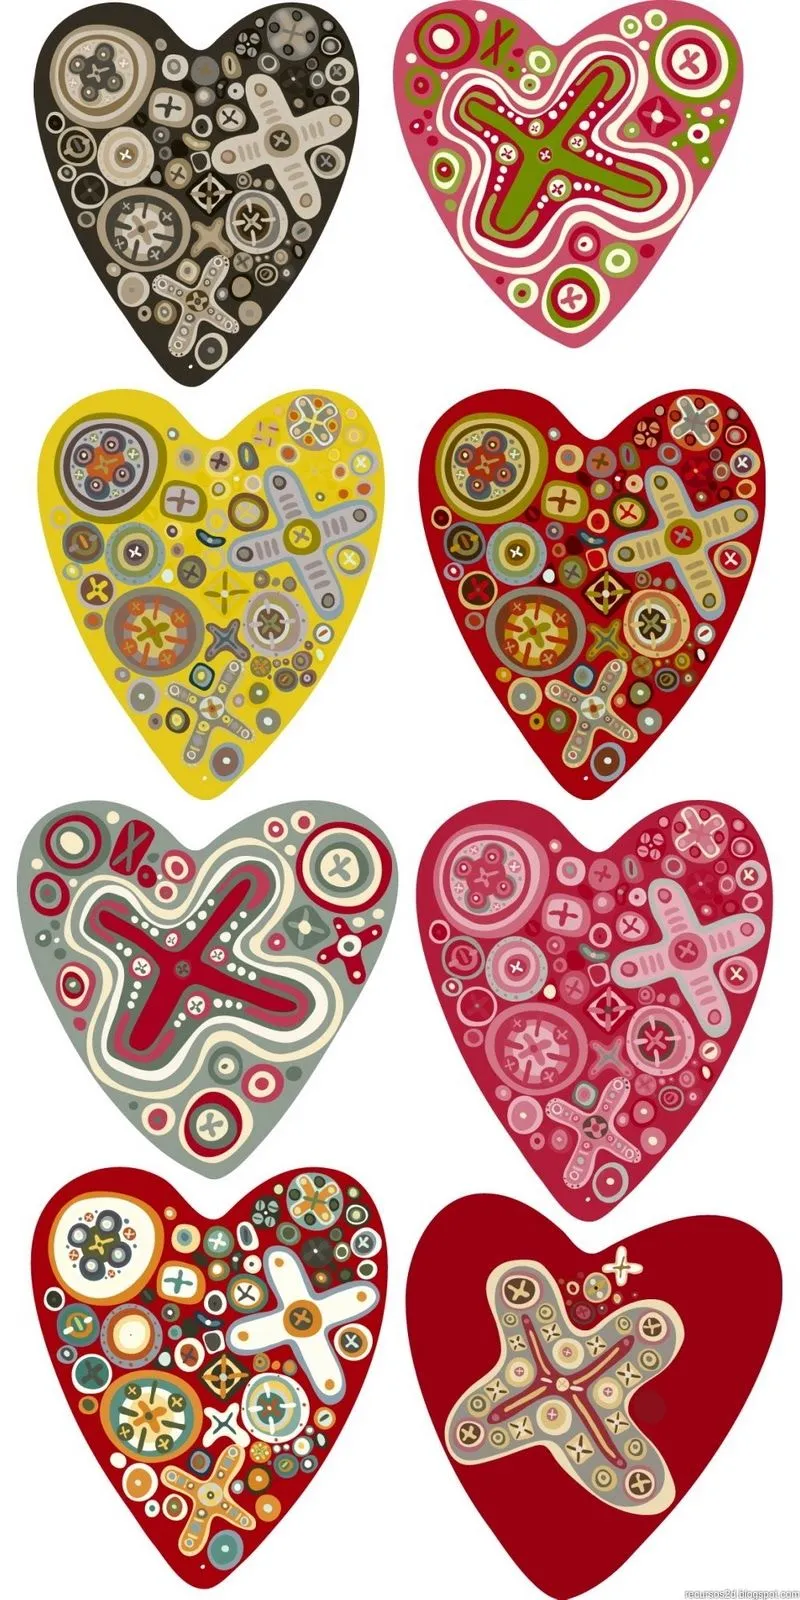 Del huacal: 8 corazones decorados